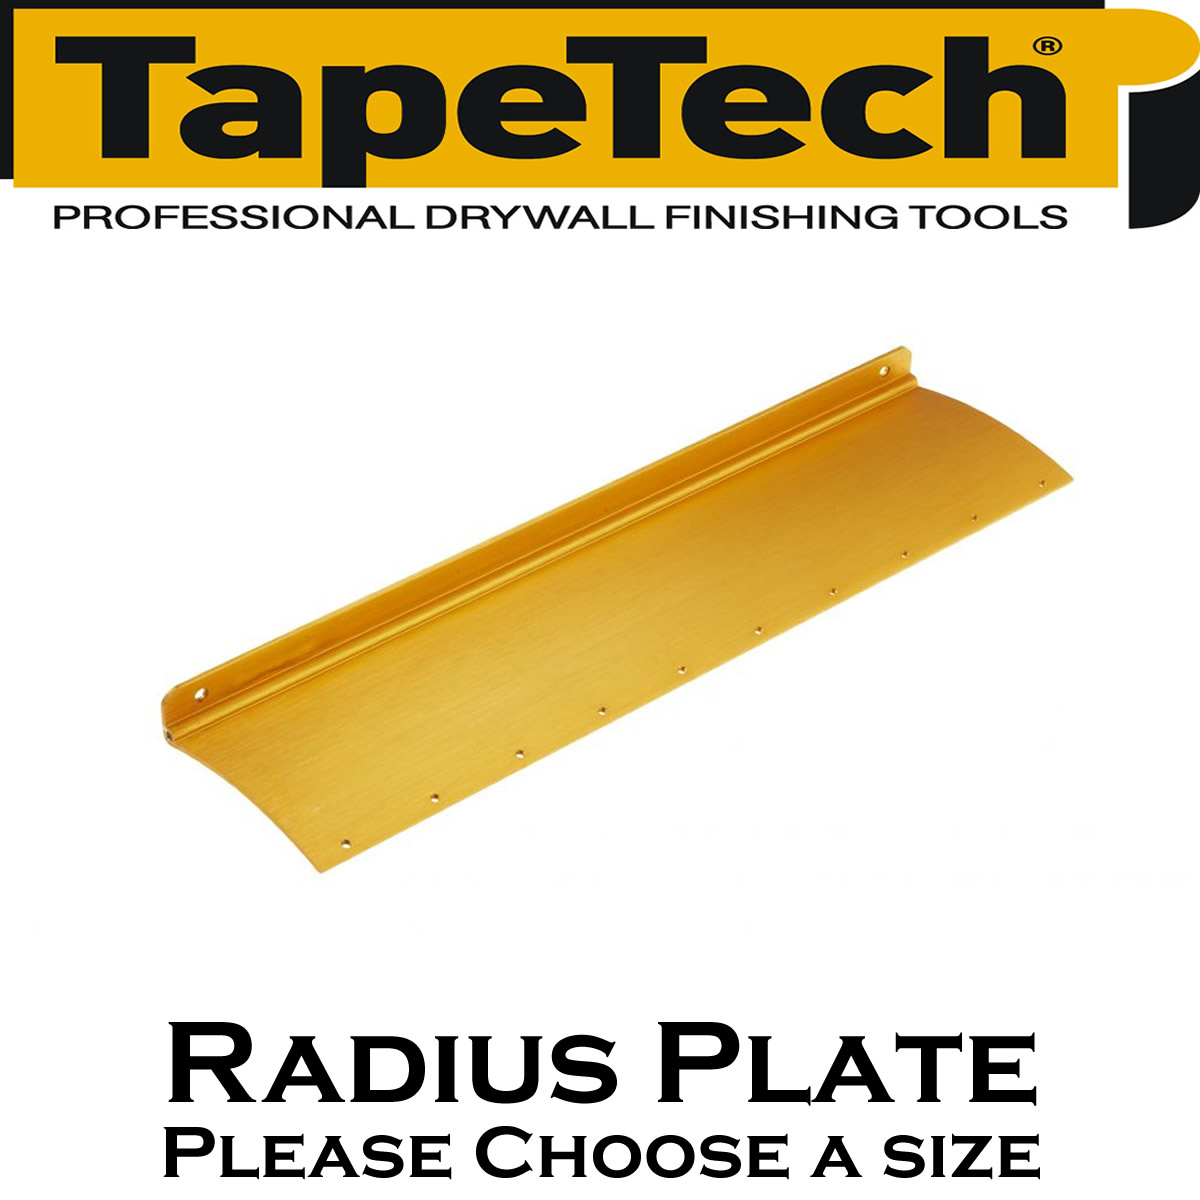 TapeTech Radius Plates